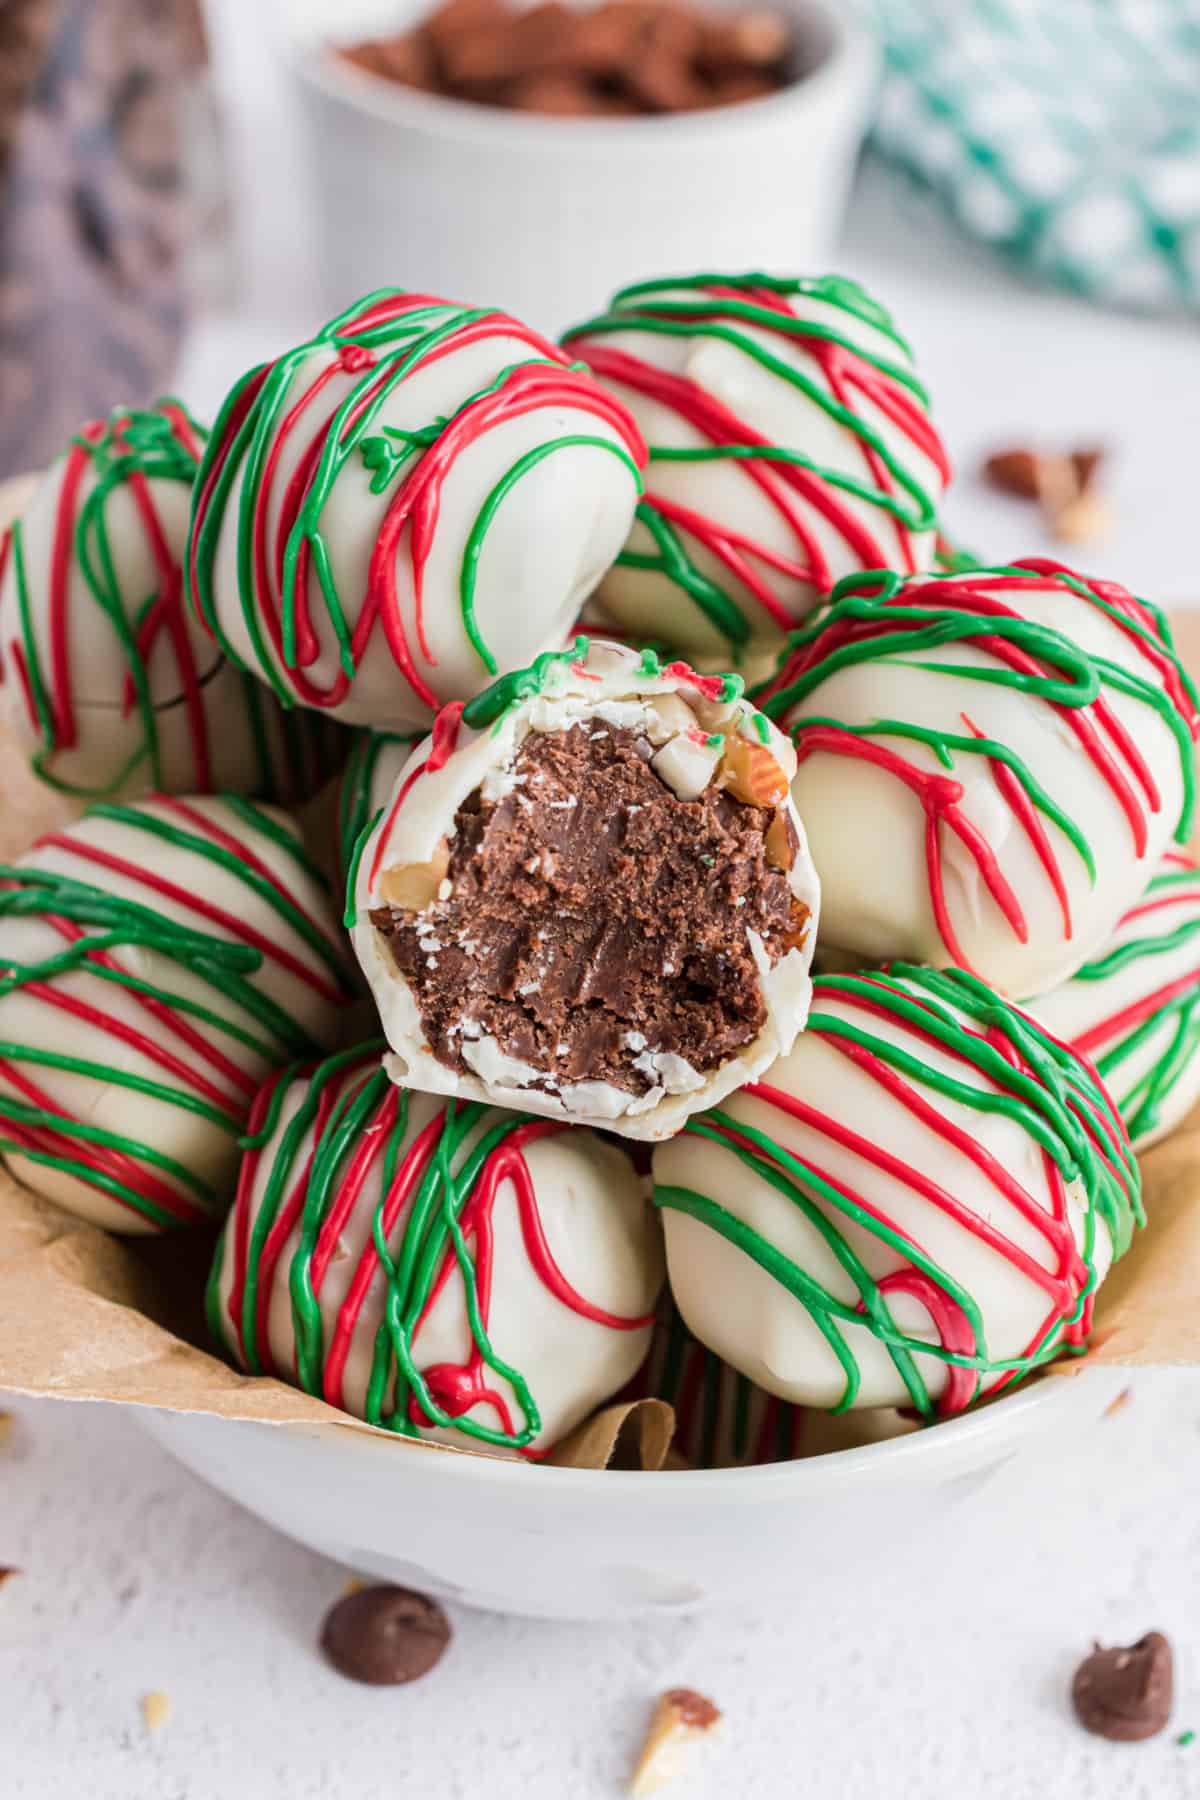 χριστουγεννιάτικα-σοκολατάκια-cheesecake-συνταγή-